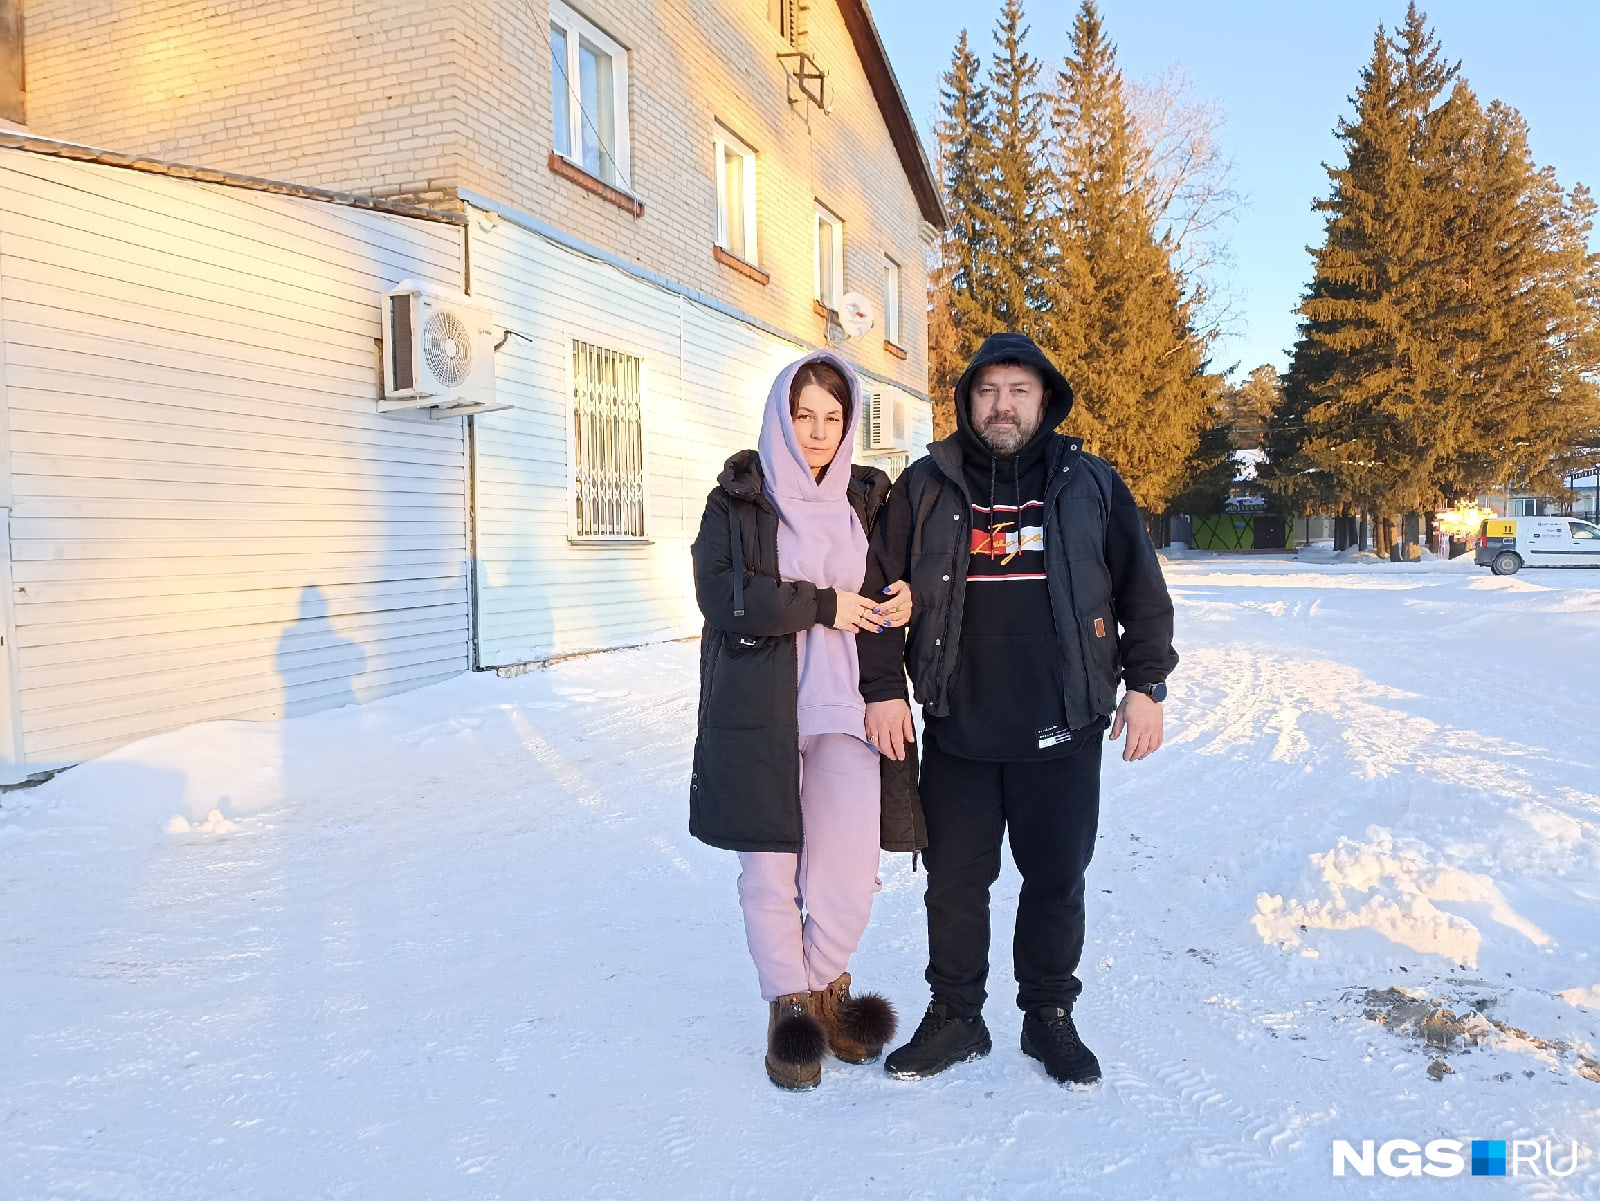 Анна и Дмитрий Литвиновы живут в центре поселка Сосновка